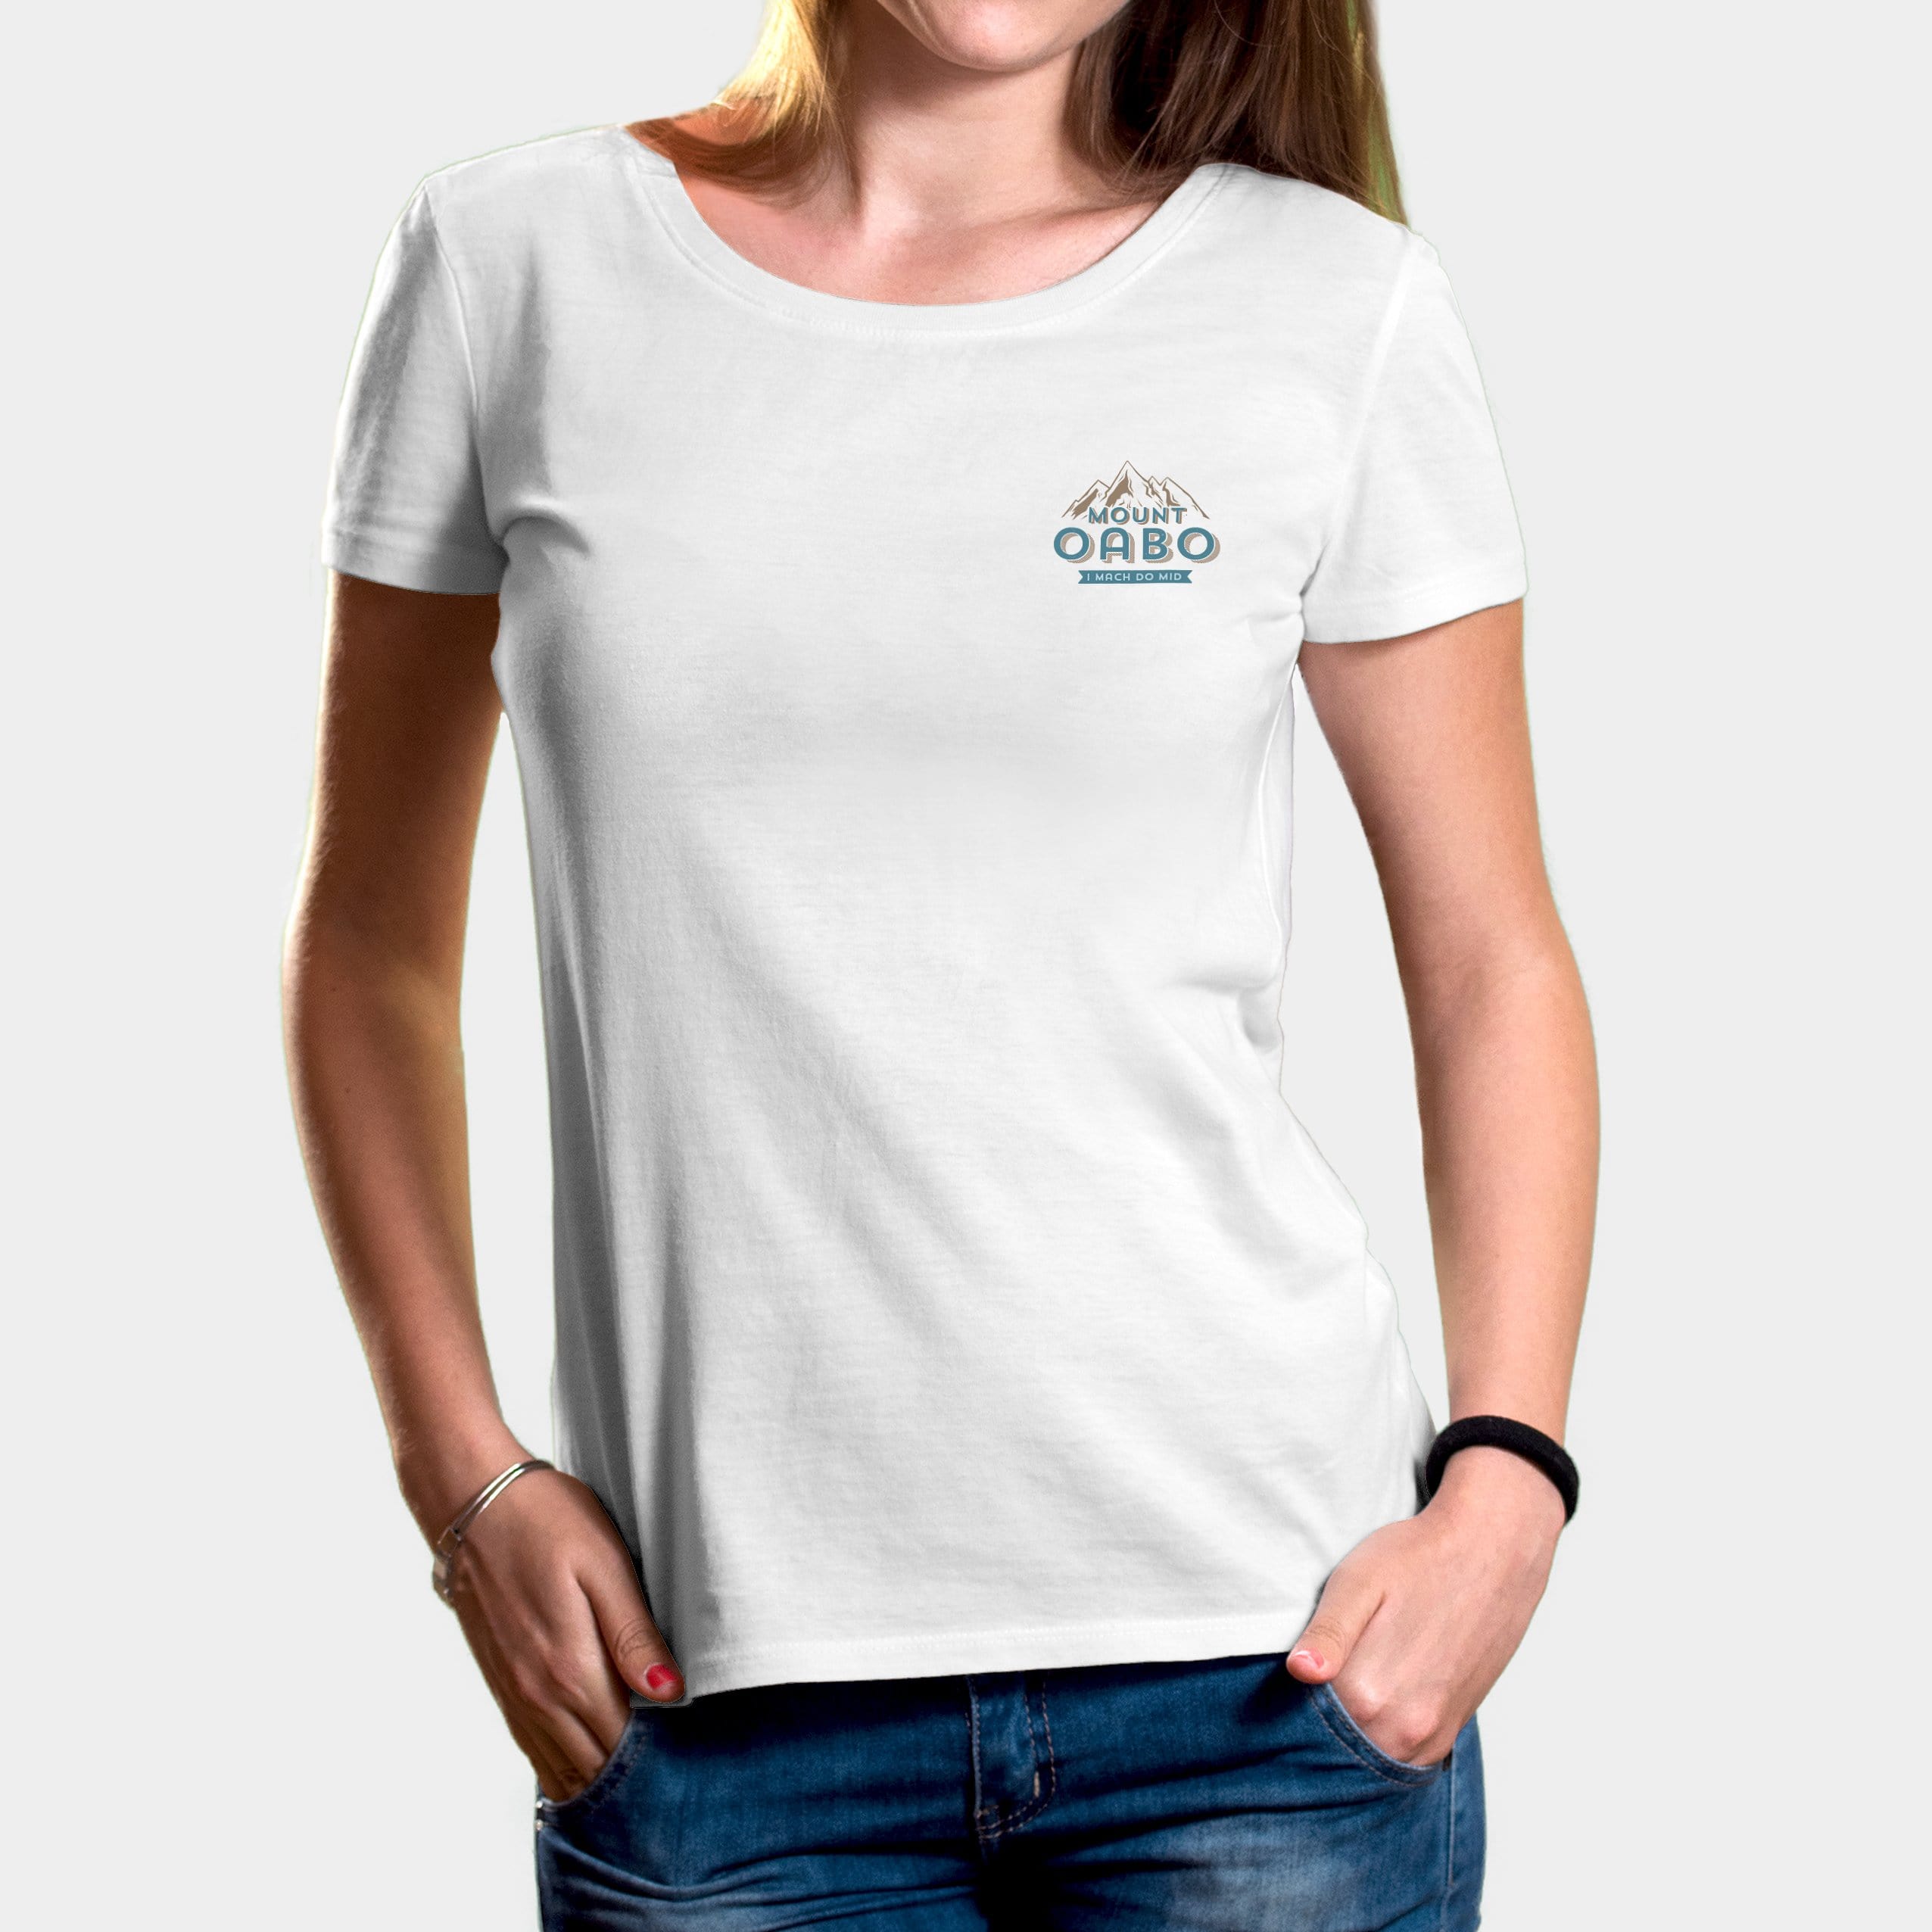 Projekt Damen-T-Shirt "Mount Oabo" XS / weiß - aus nachhaltiger und fairer Produktion